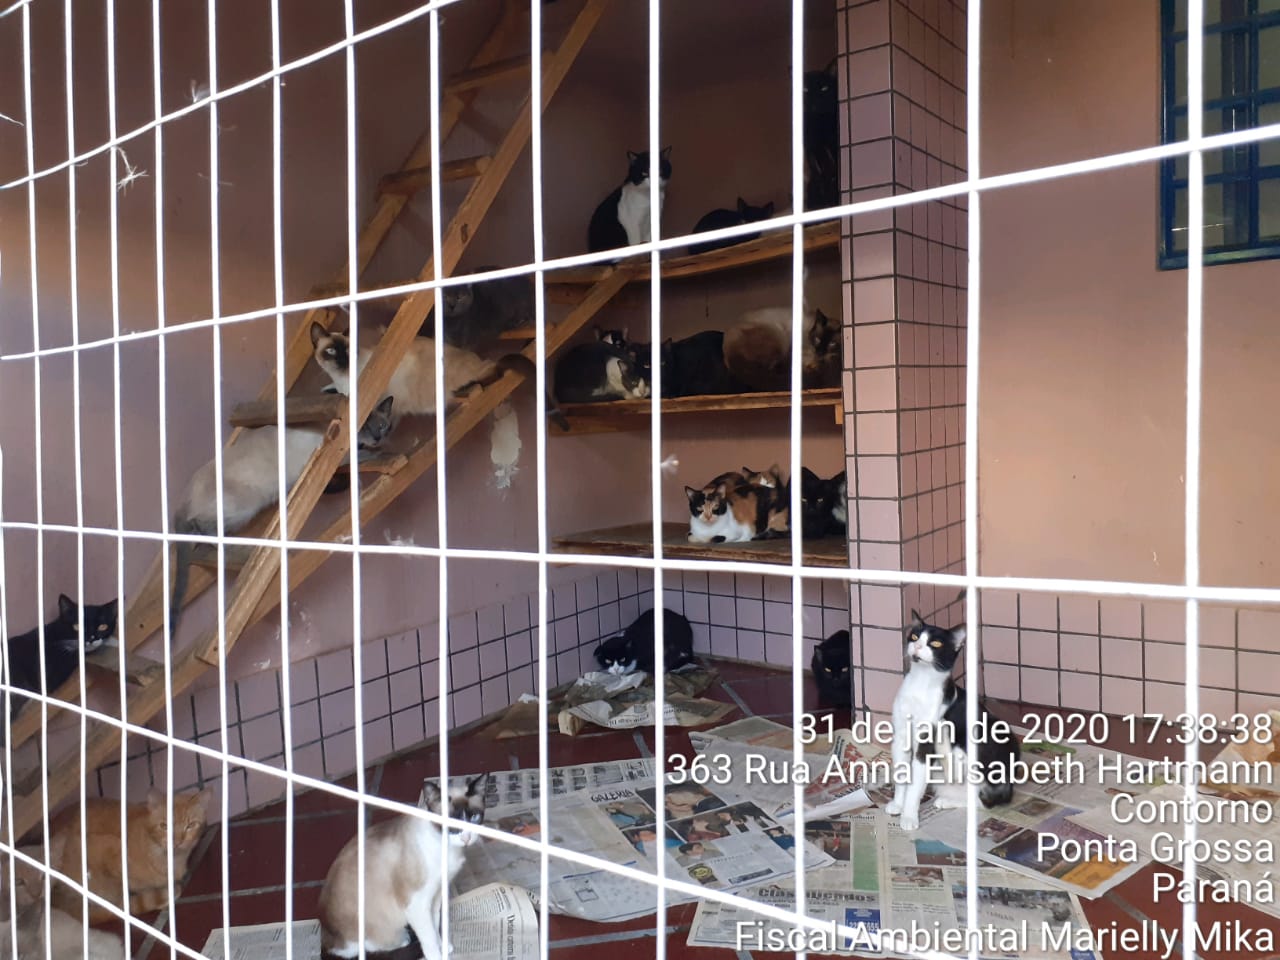  Fiscalização encontra mais de 380 gatos em situação precária, em casa de Ponta Grossa